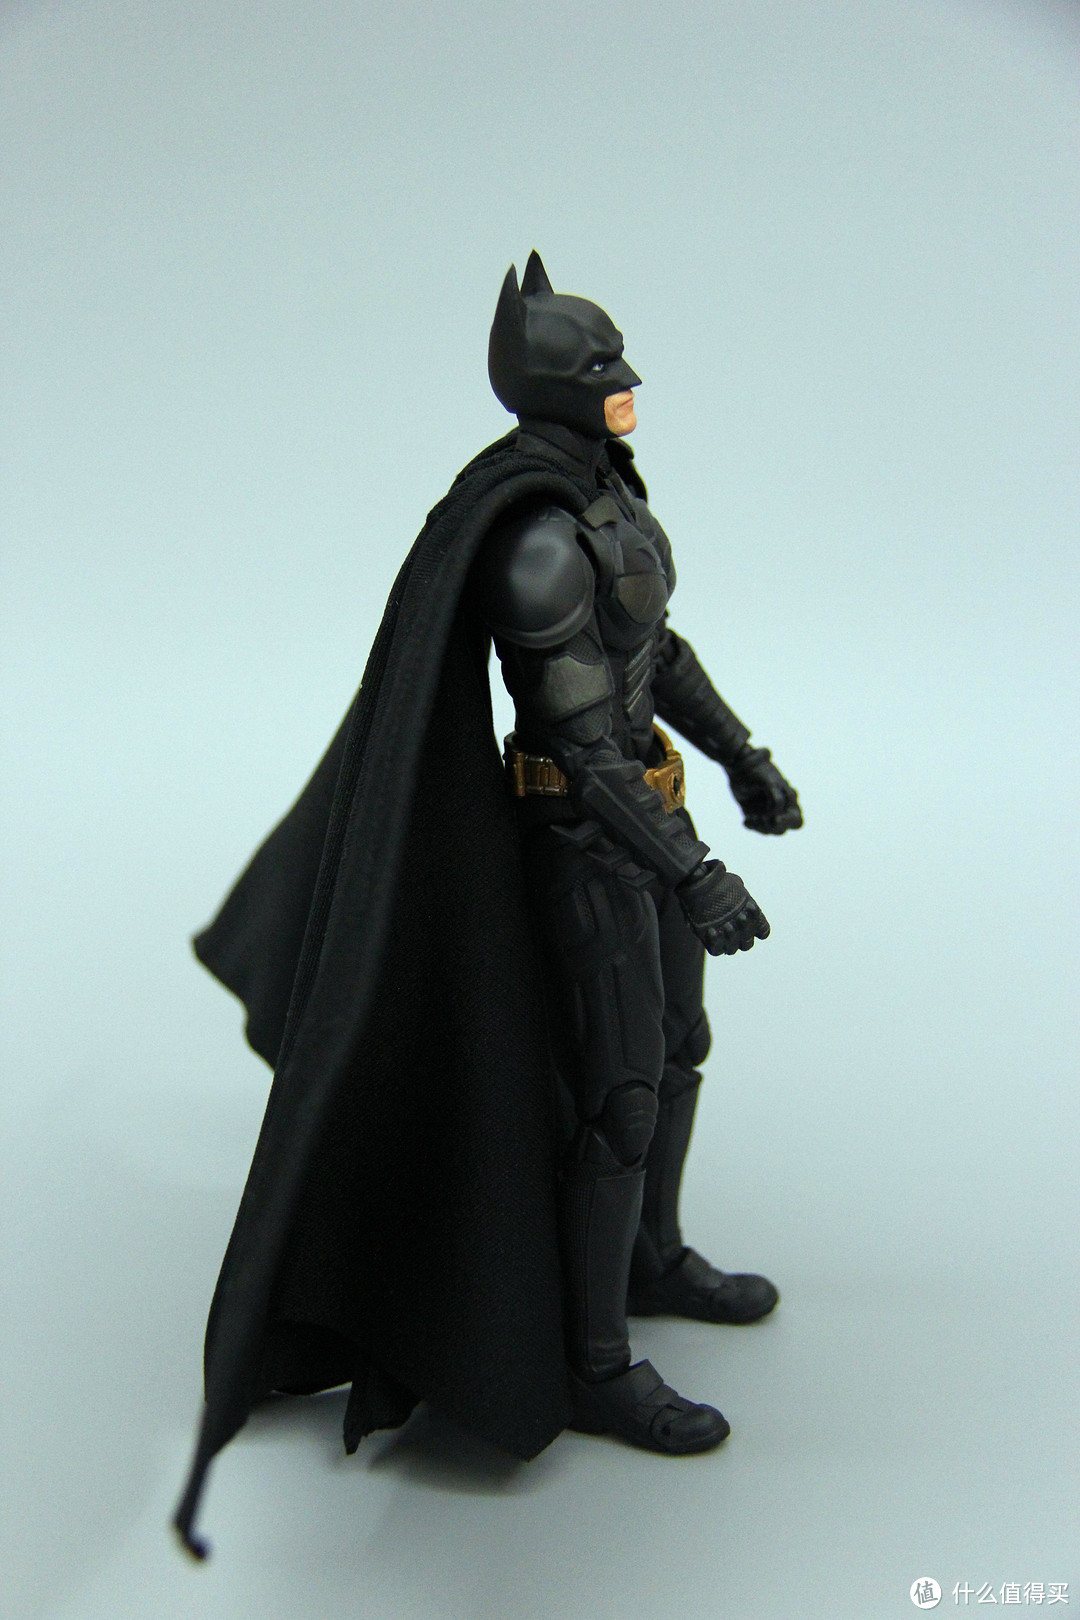 暗夜魅影—BANDAI 万代 蝙蝠侠S.H.F Batman&Batpod把玩